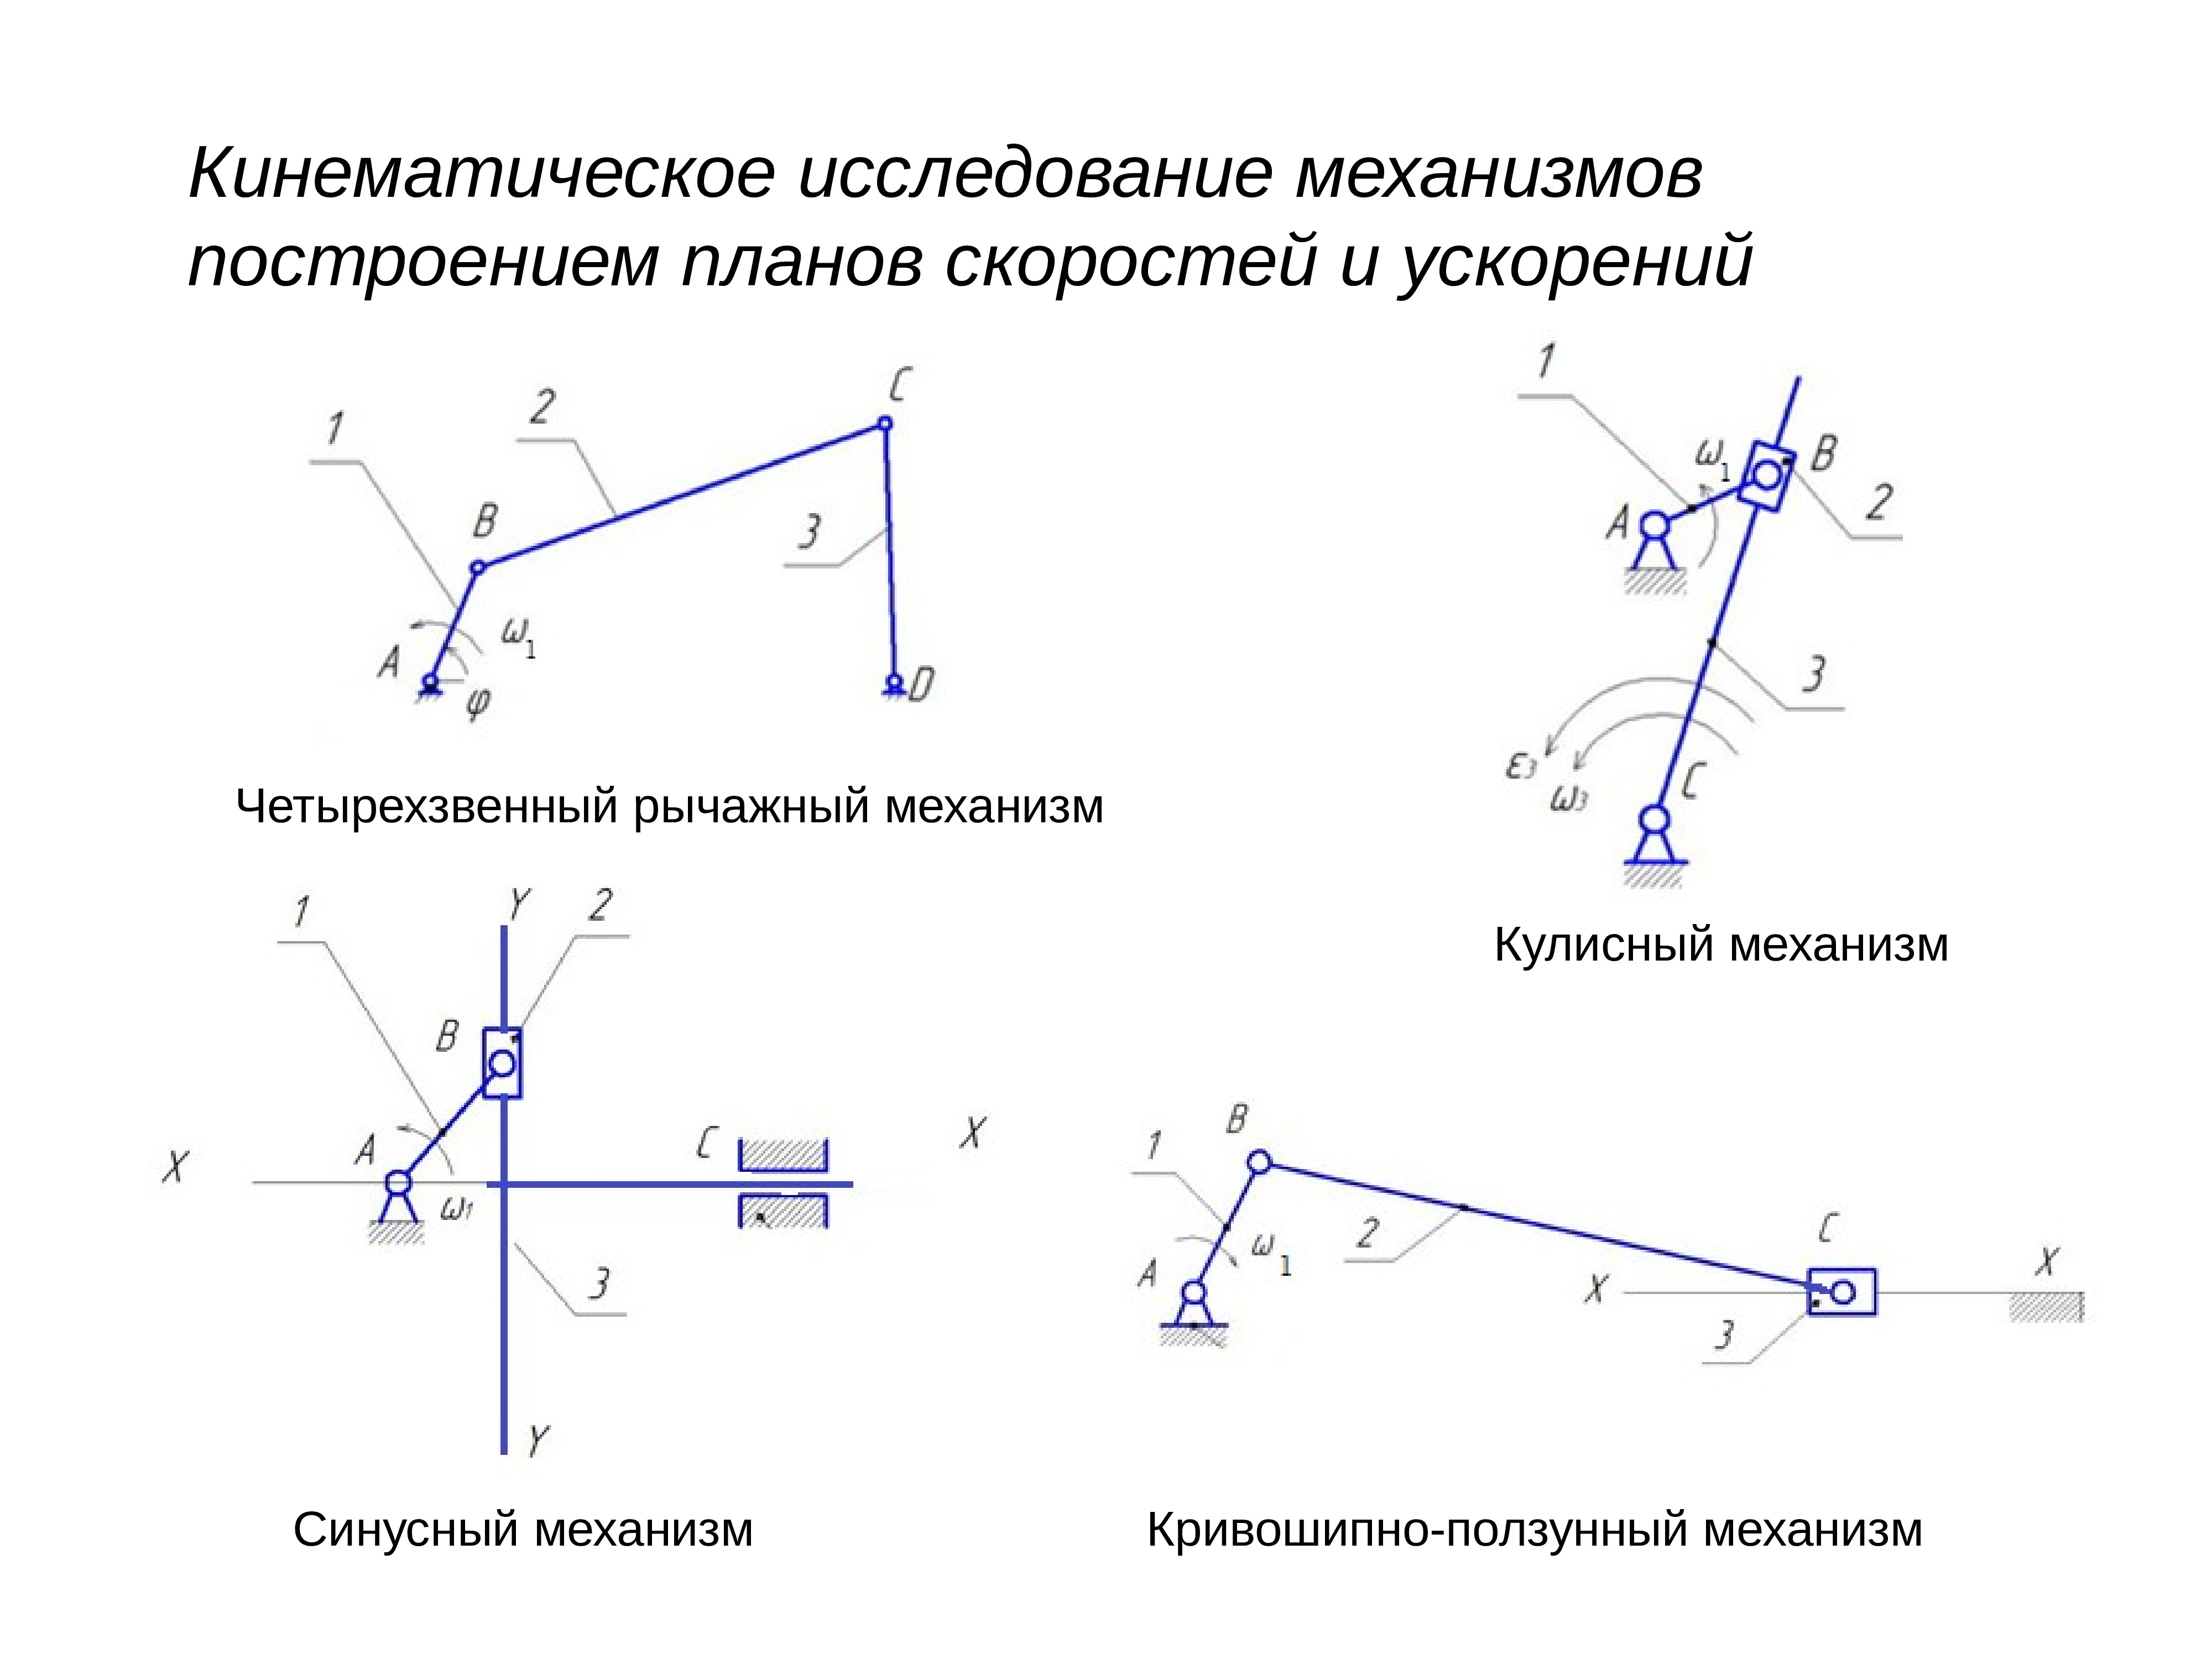 Кинематический анализ Кривошипно-кулисного механизма